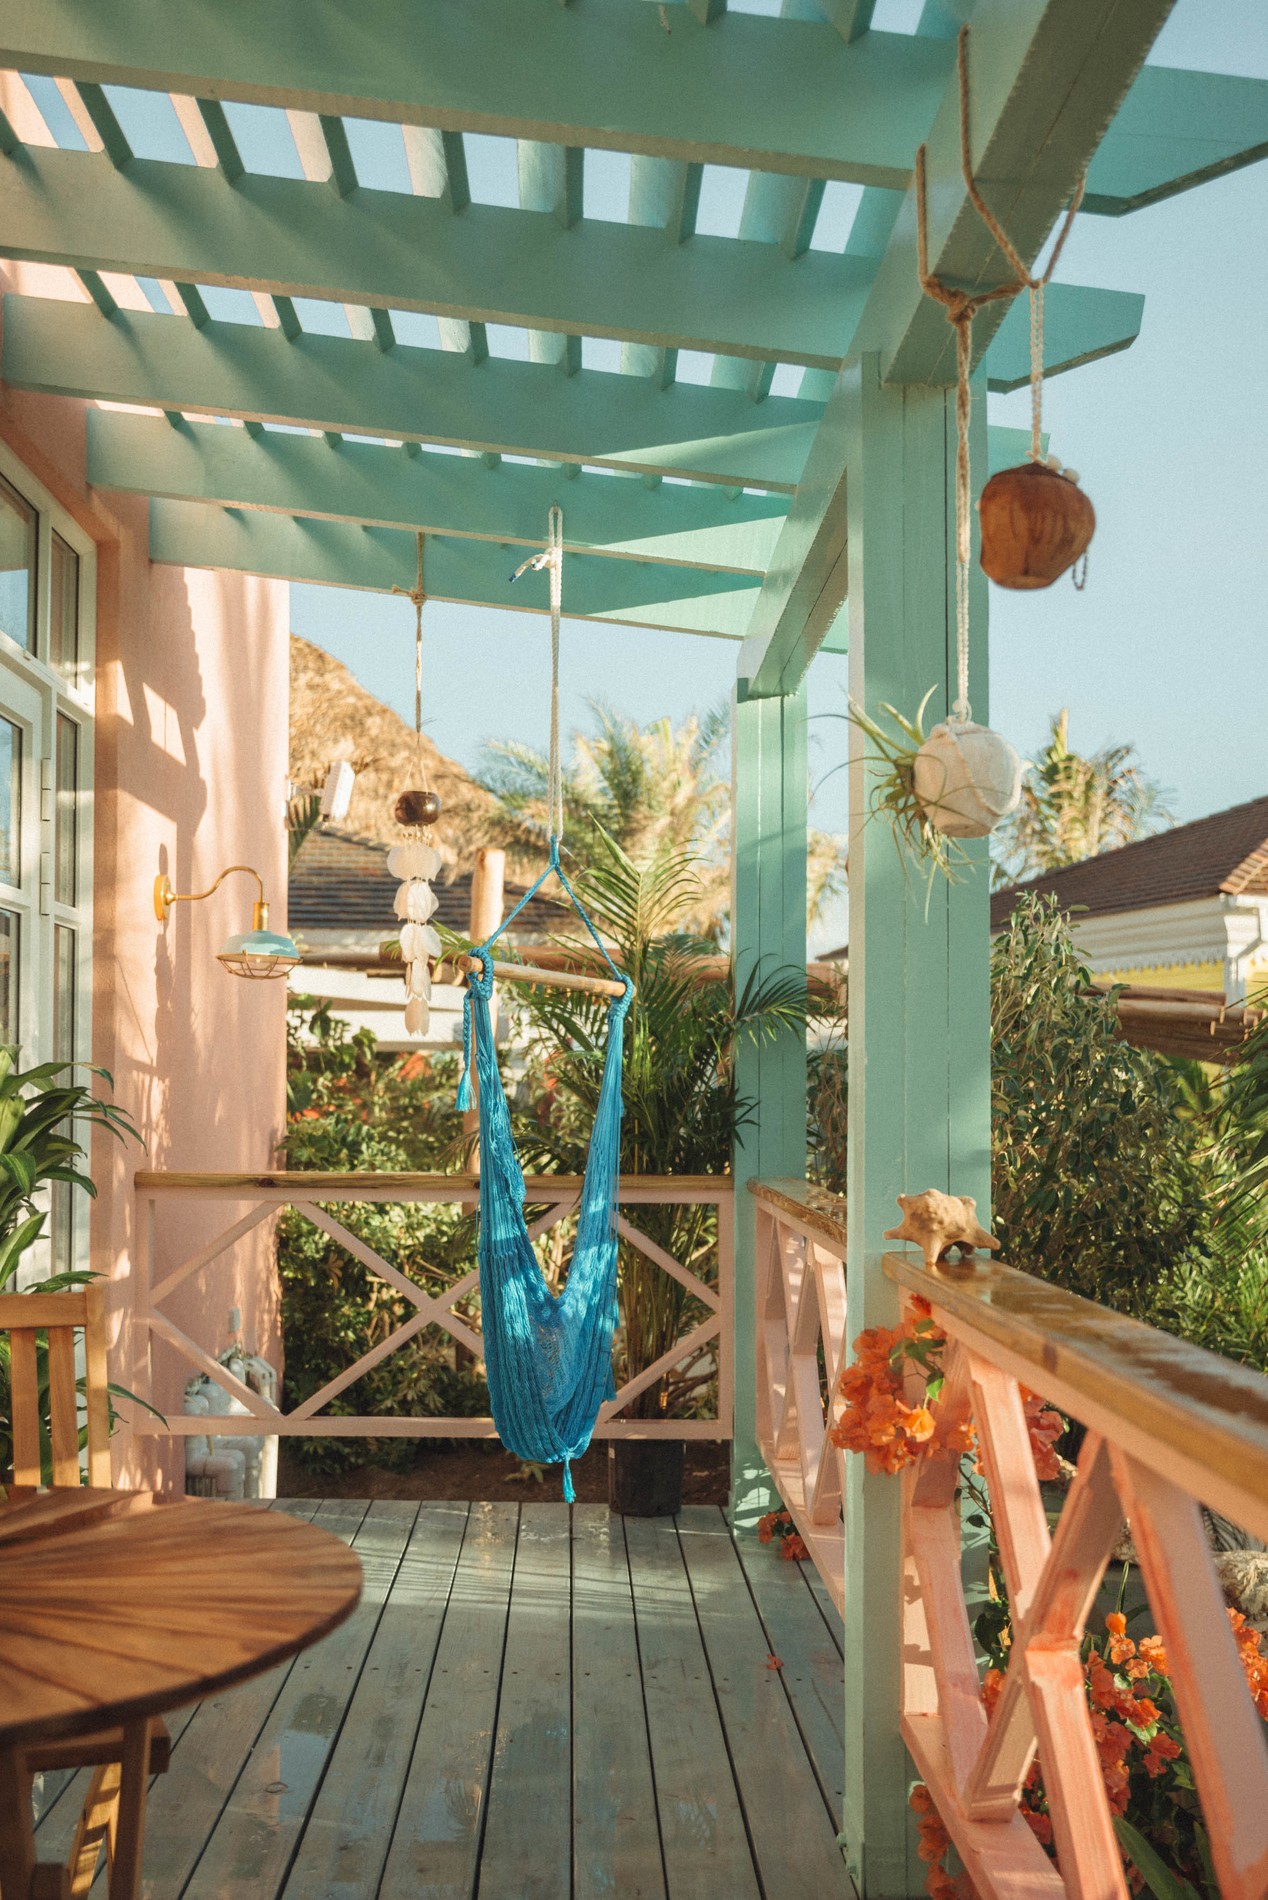 Você pode ser pago para viver neste hotel com vistas deslumbrantes, em Aruba (Foto: Boardwalk Boutique Hotel/ Divulgação)